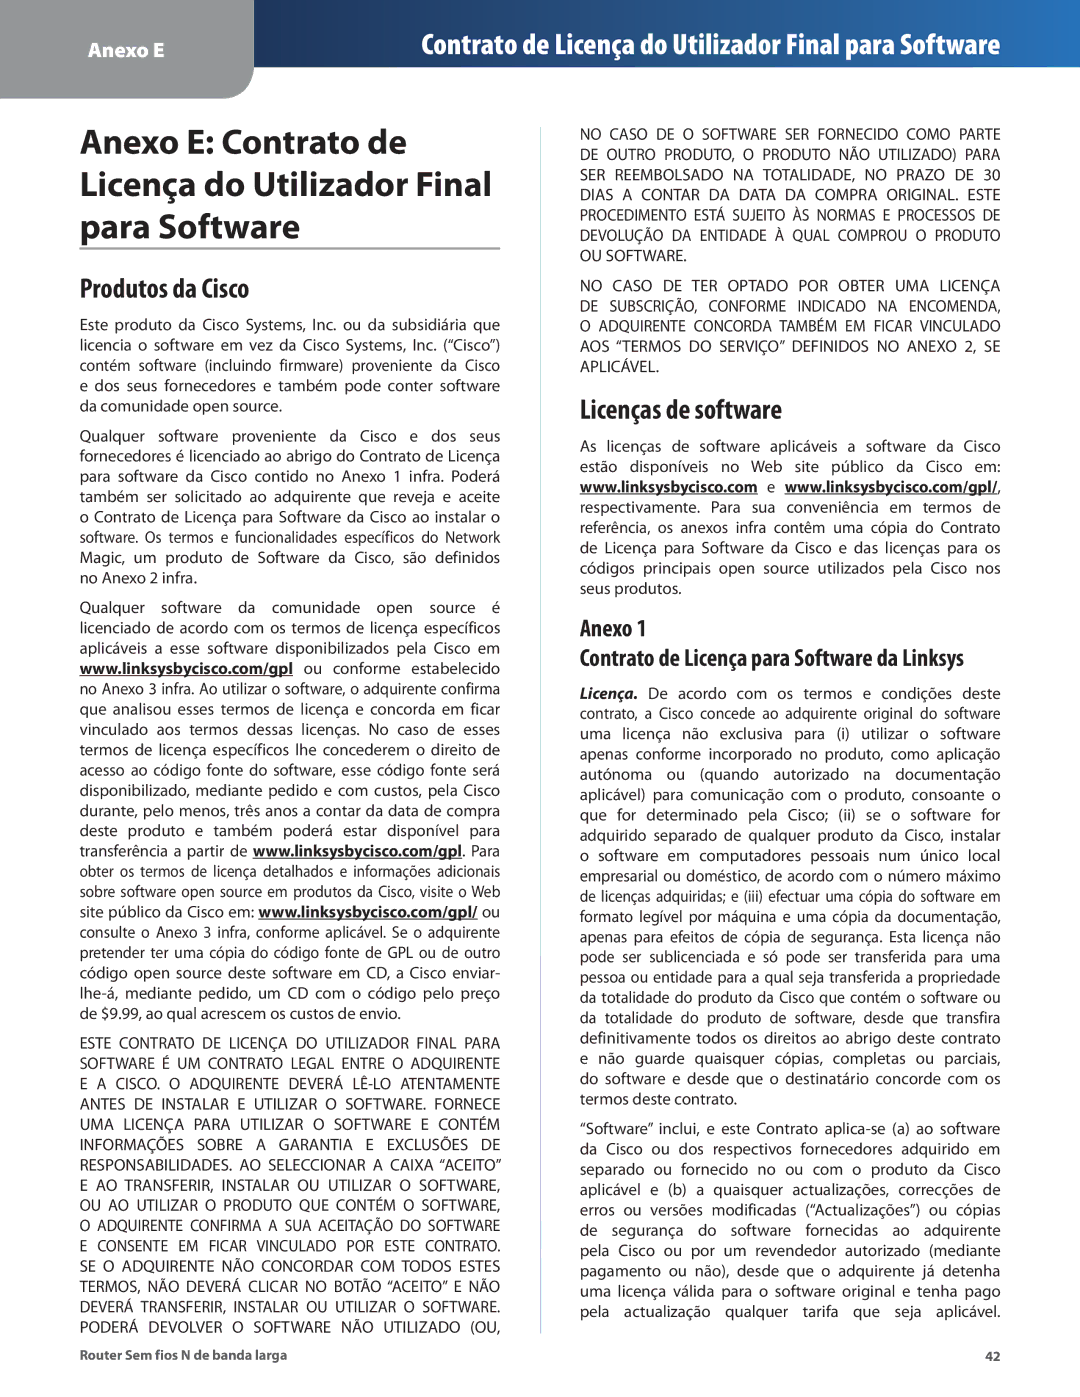 Linksys WRT160N manual Produtos da Cisco, Licenças de software 